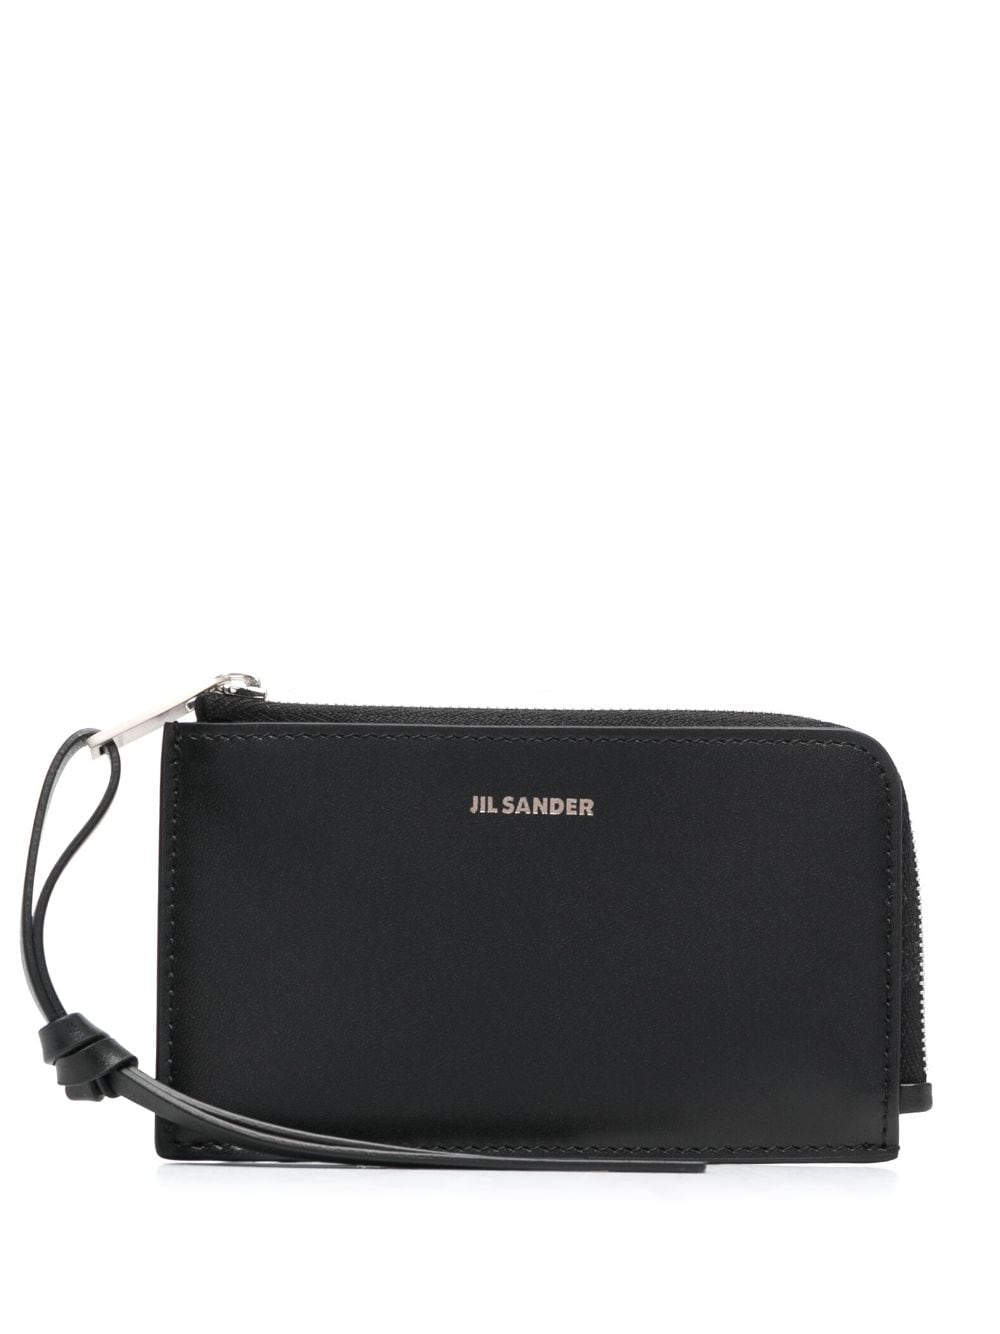 Jil Sander embossed-logo leather wallet - Black von Jil Sander